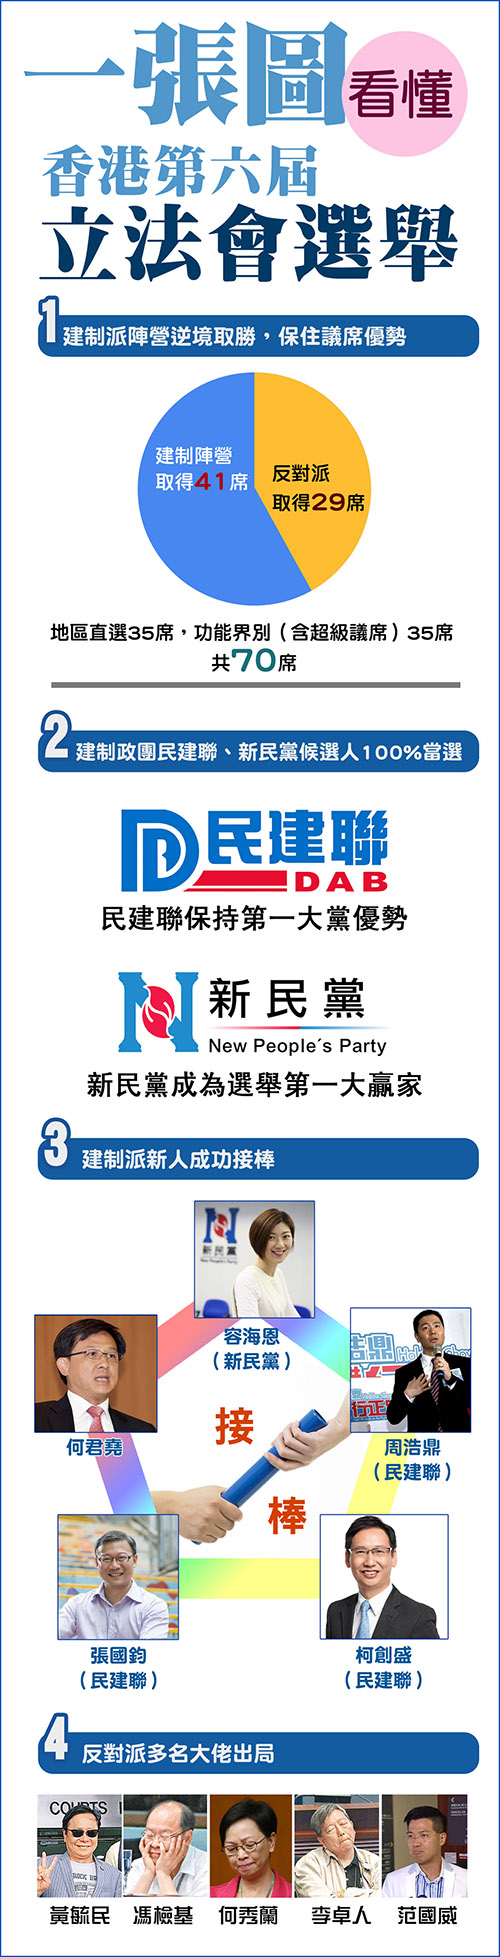 一图看懂香港特区立法会选举